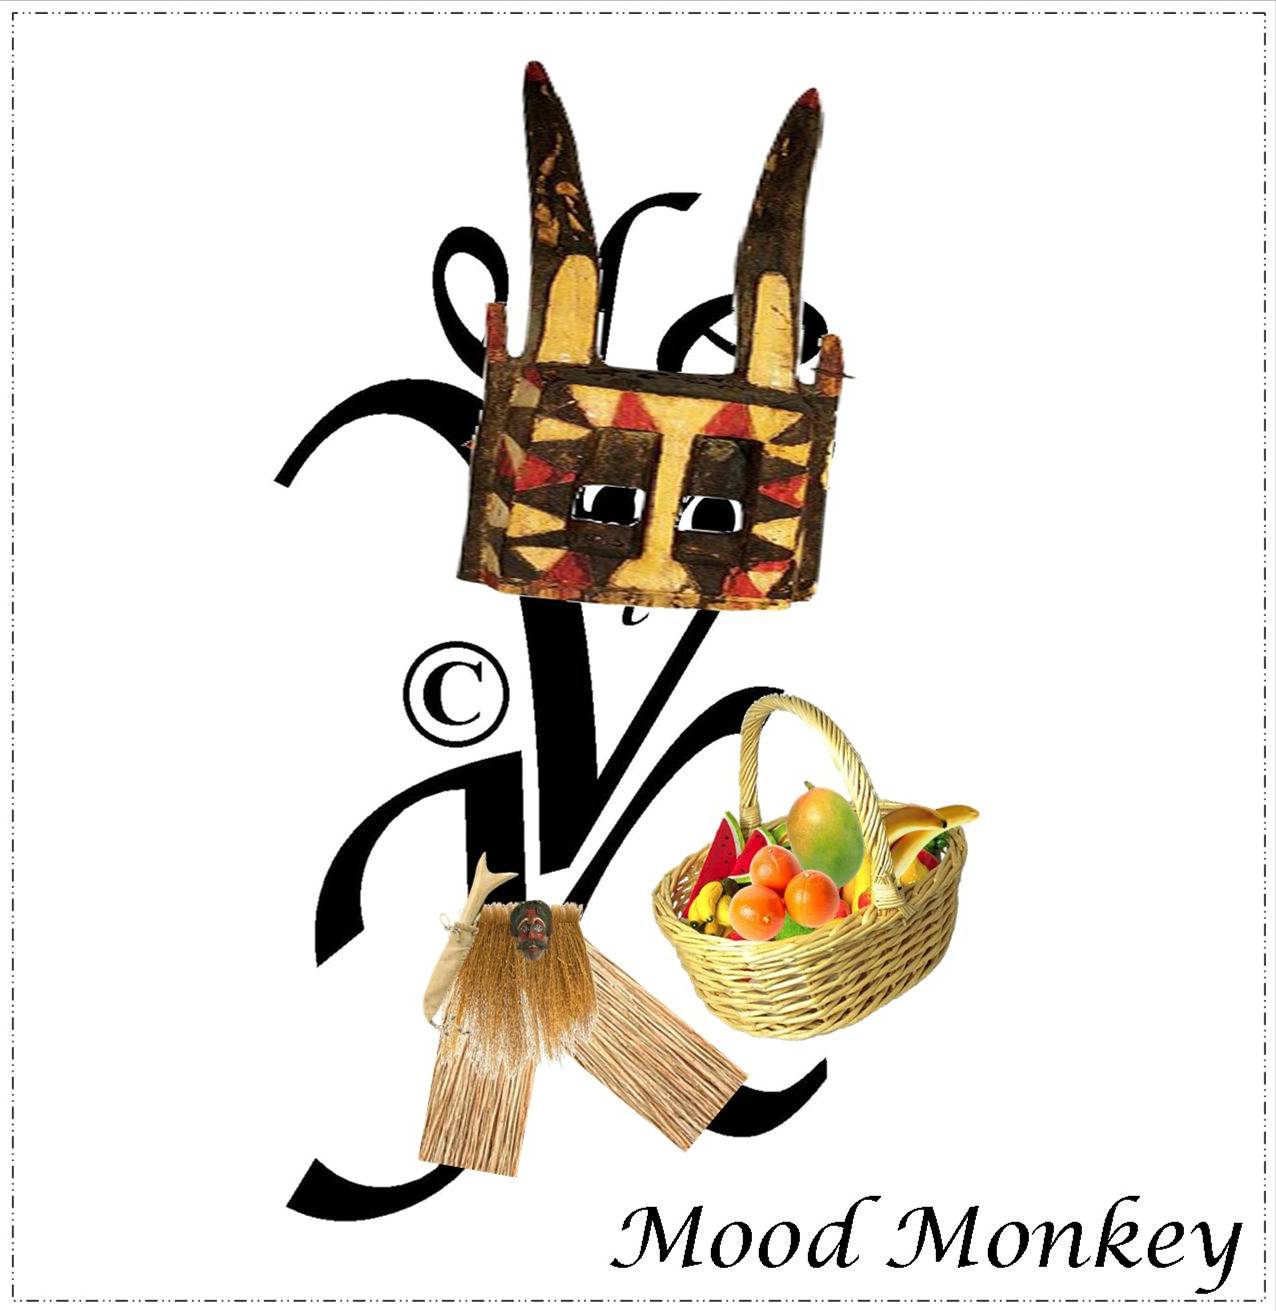 Mood Monkey(c)